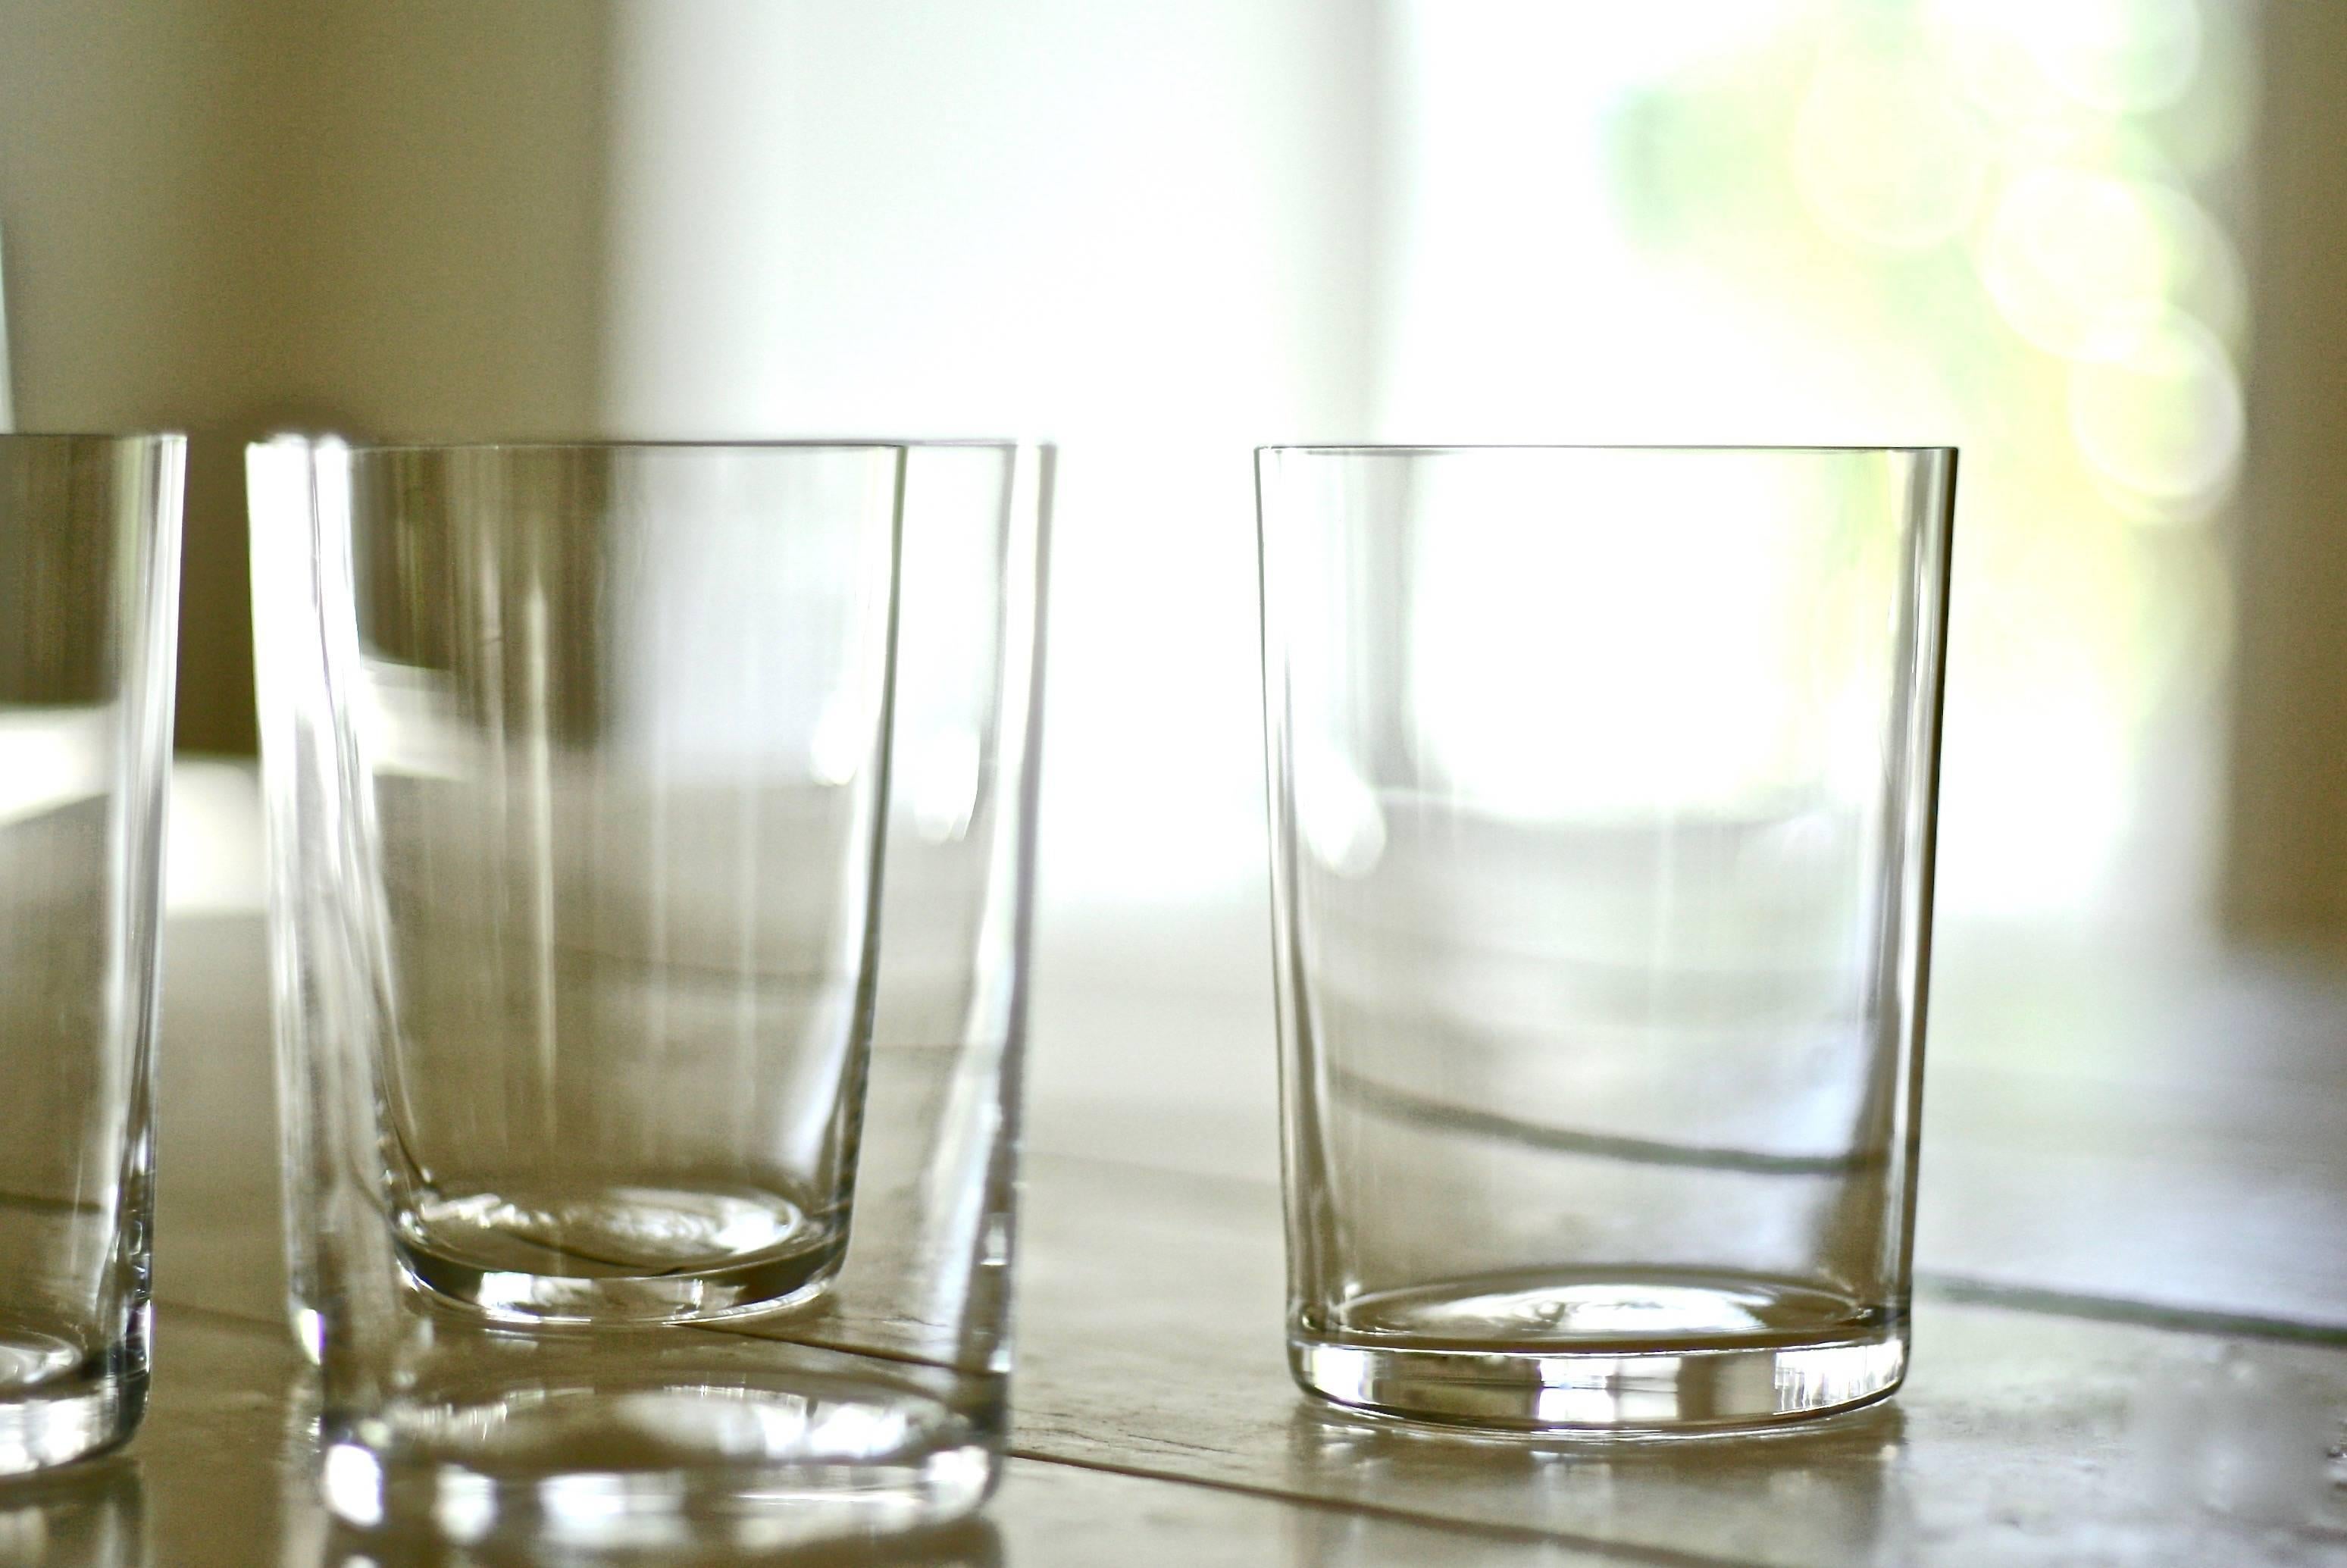 Lancés avec Takashimaya en 1999, ces verres à eau en cristal soufflé à la main sont devenus un classique moderne. Chaque pièce de Deborah Ehrlich est conçue pour l'extraordinaire force et clarté du cristal suédois. La simplicité du design, la